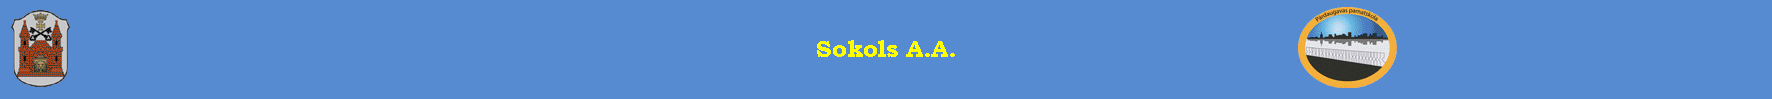 Sokols A.A.